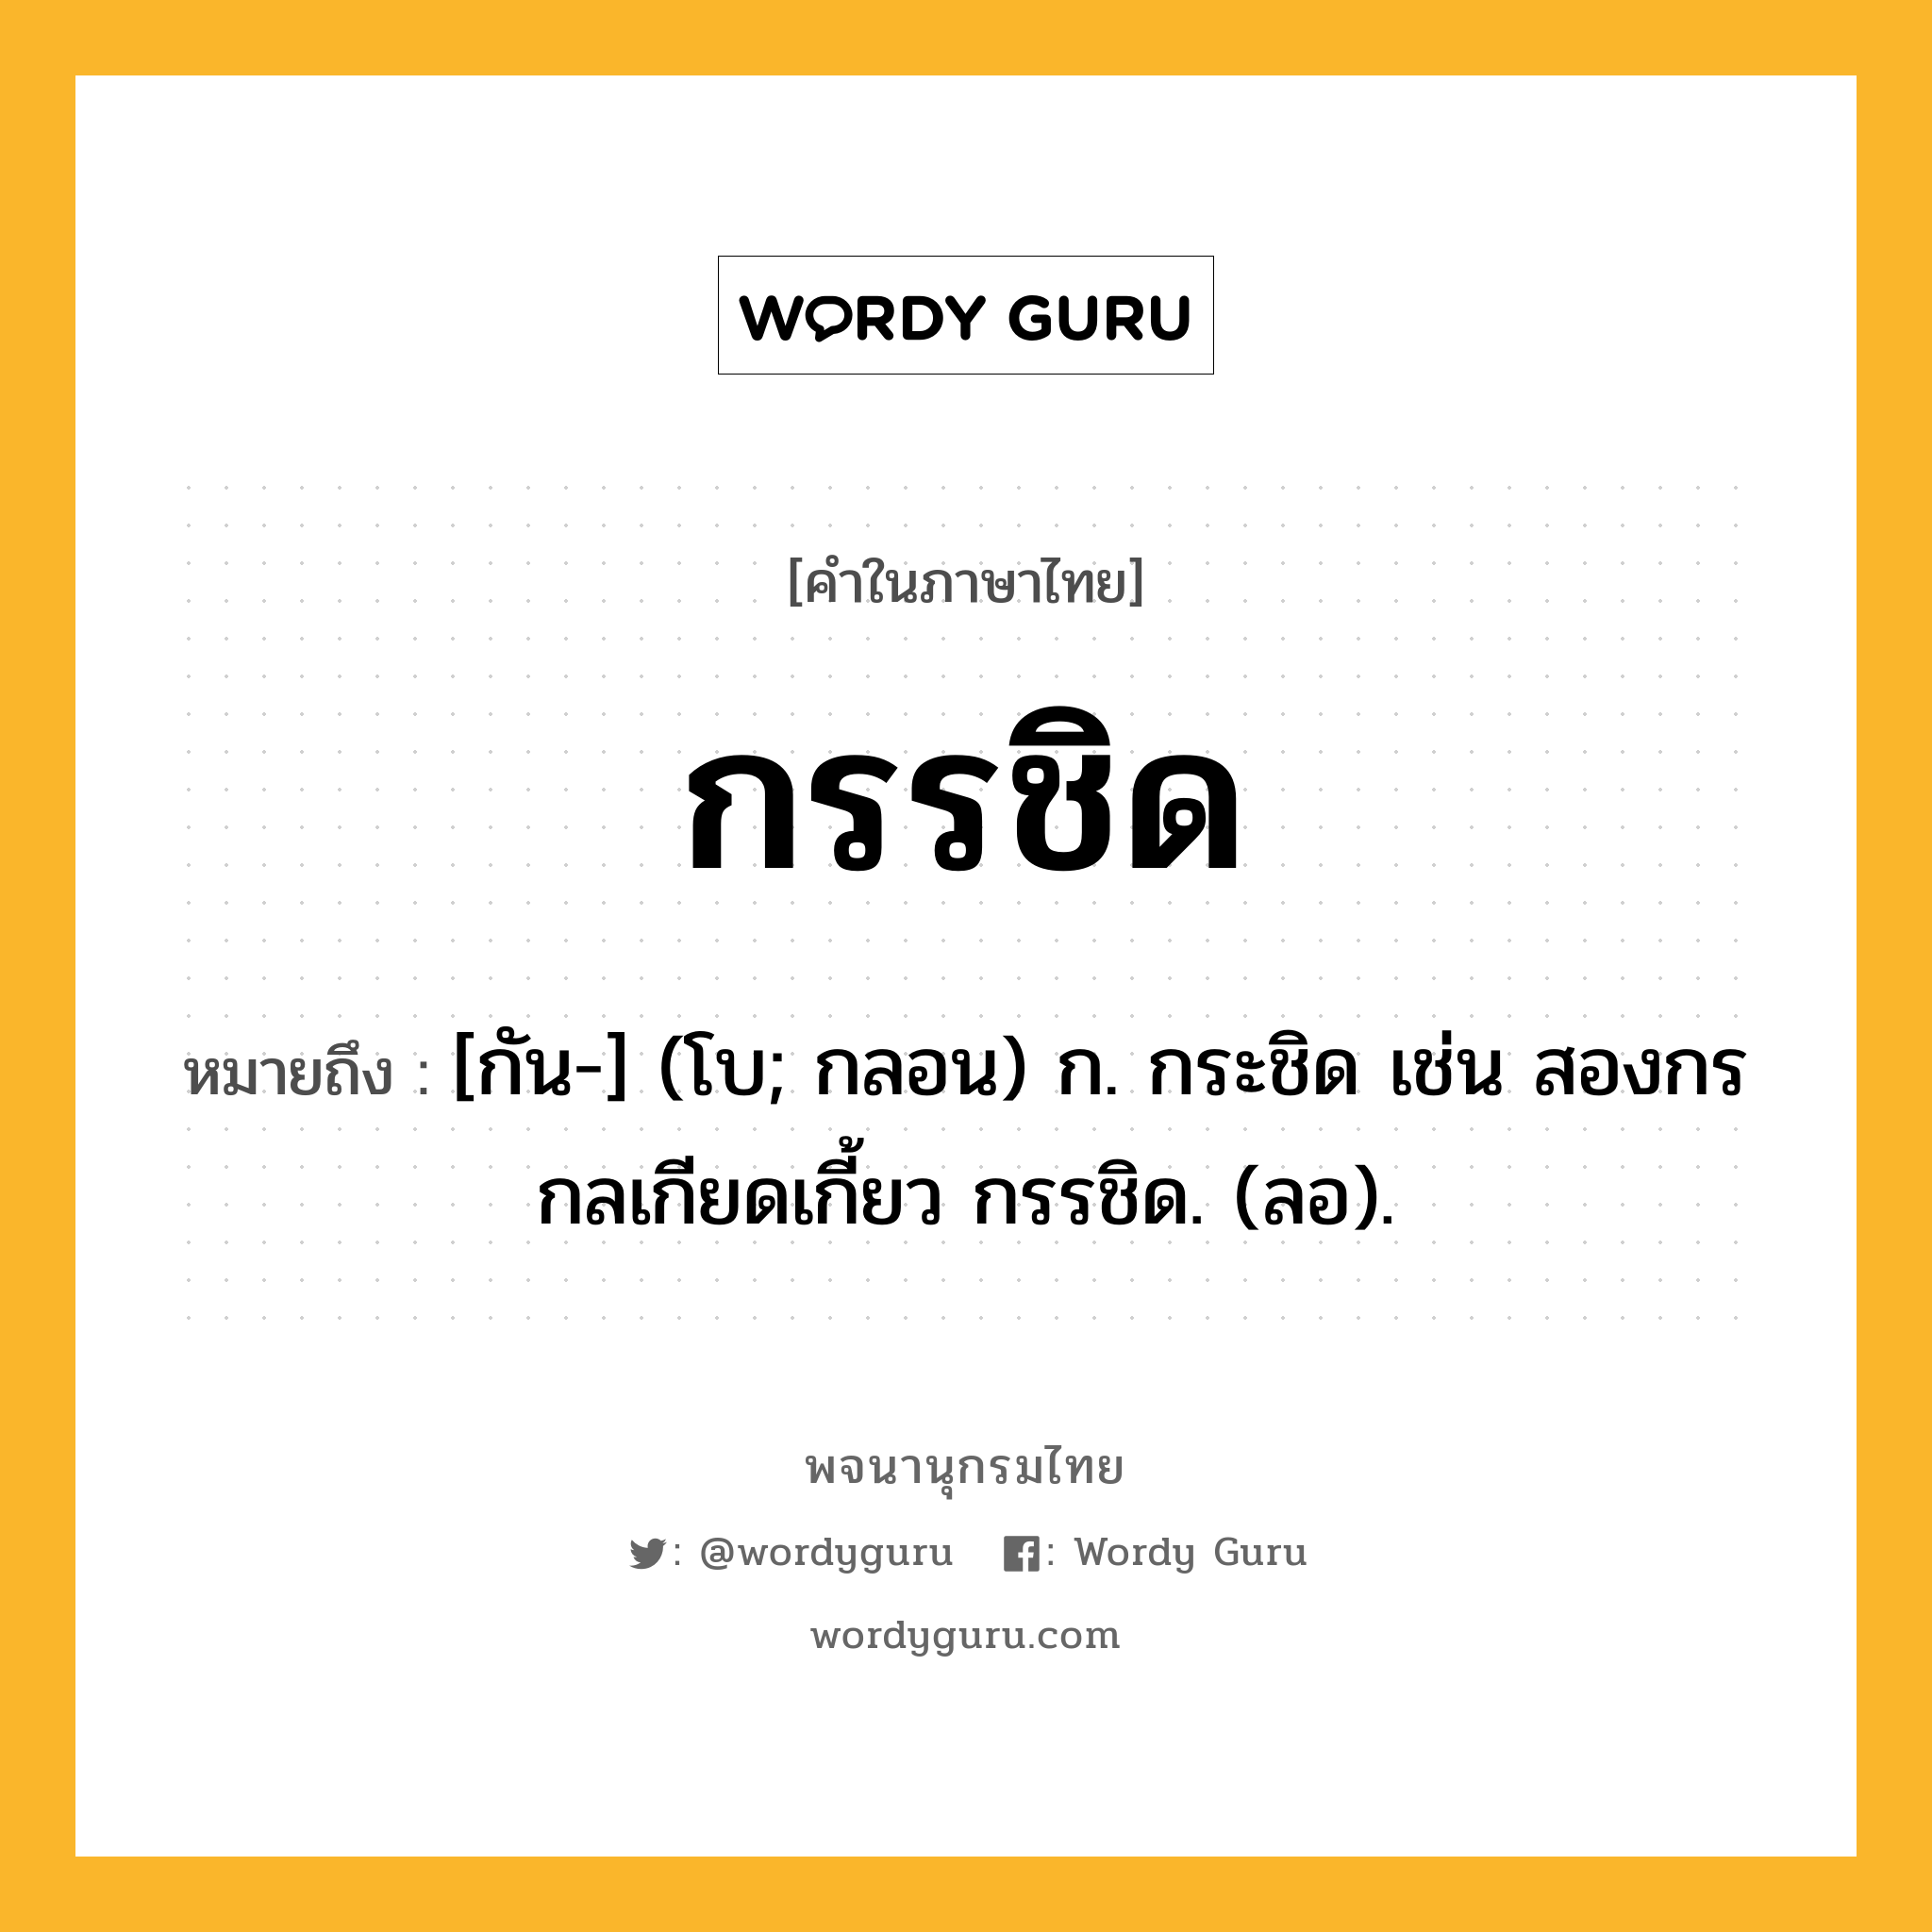 กรรชิด หมายถึงอะไร?, คำในภาษาไทย กรรชิด หมายถึง [กัน-] (โบ; กลอน) ก. กระชิด เช่น สองกรกลเกียดเกี้ยว กรรชิด. (ลอ).